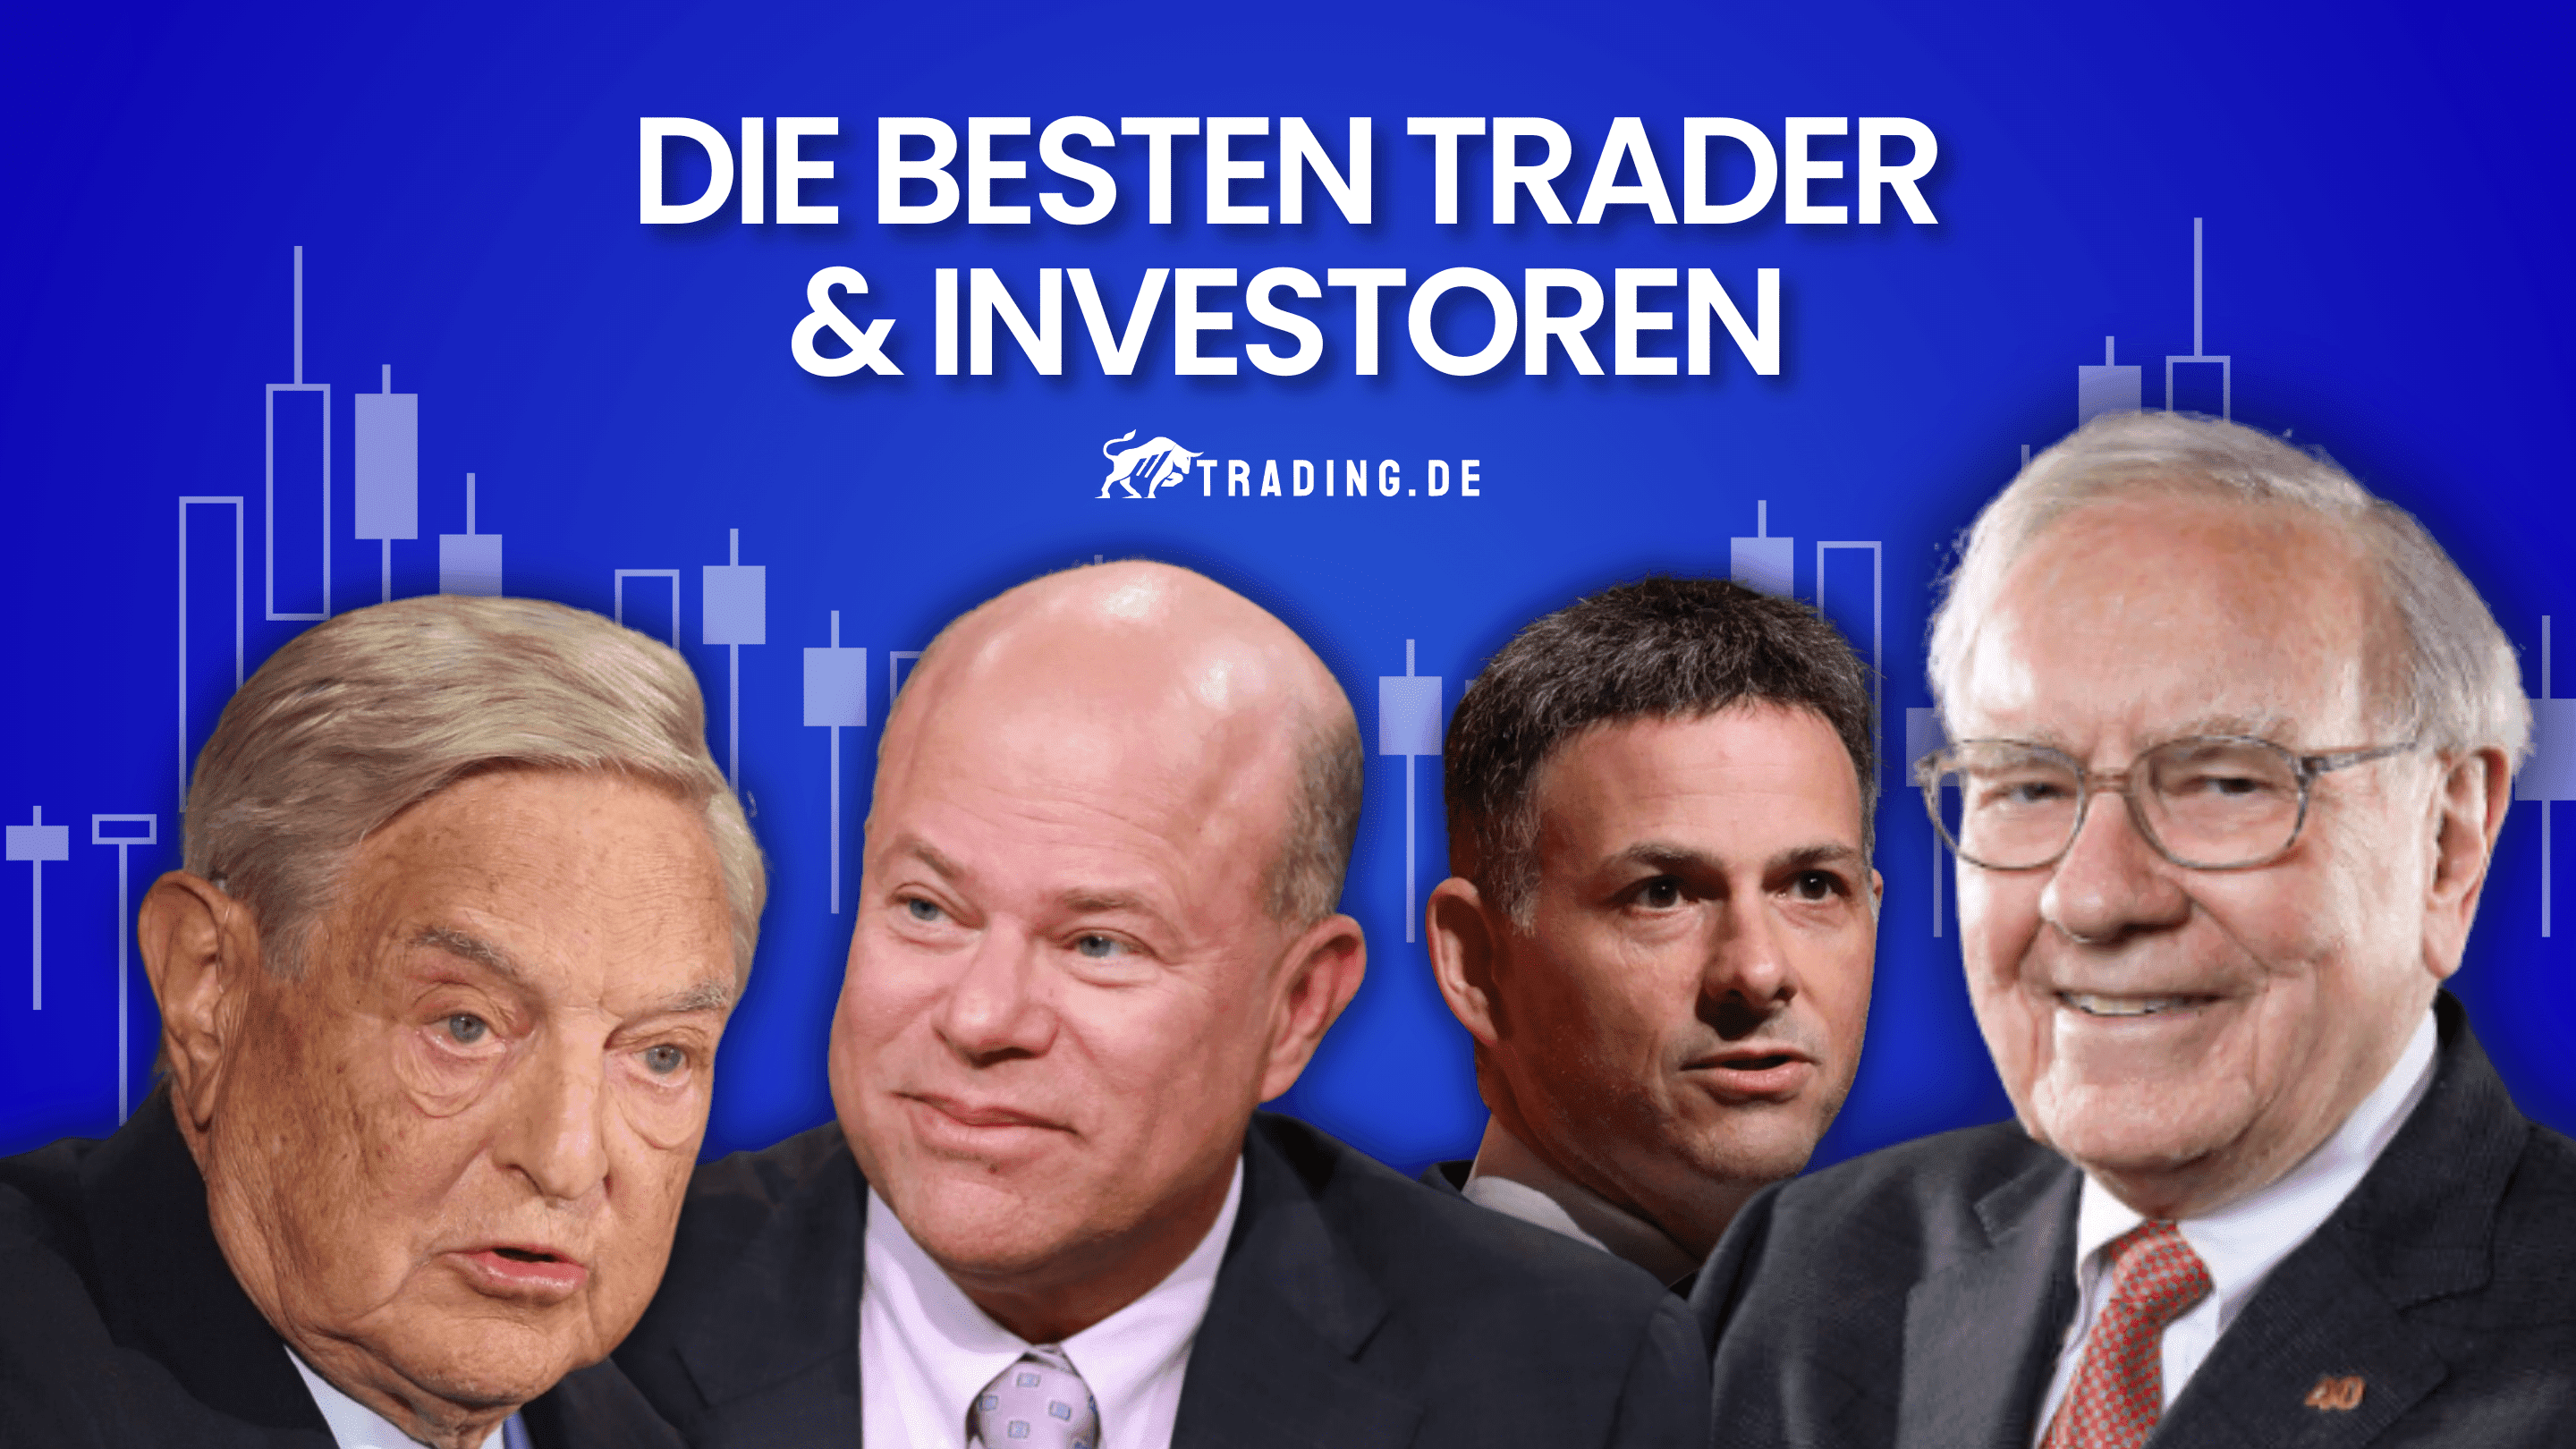 Die besten Trader & Investoren